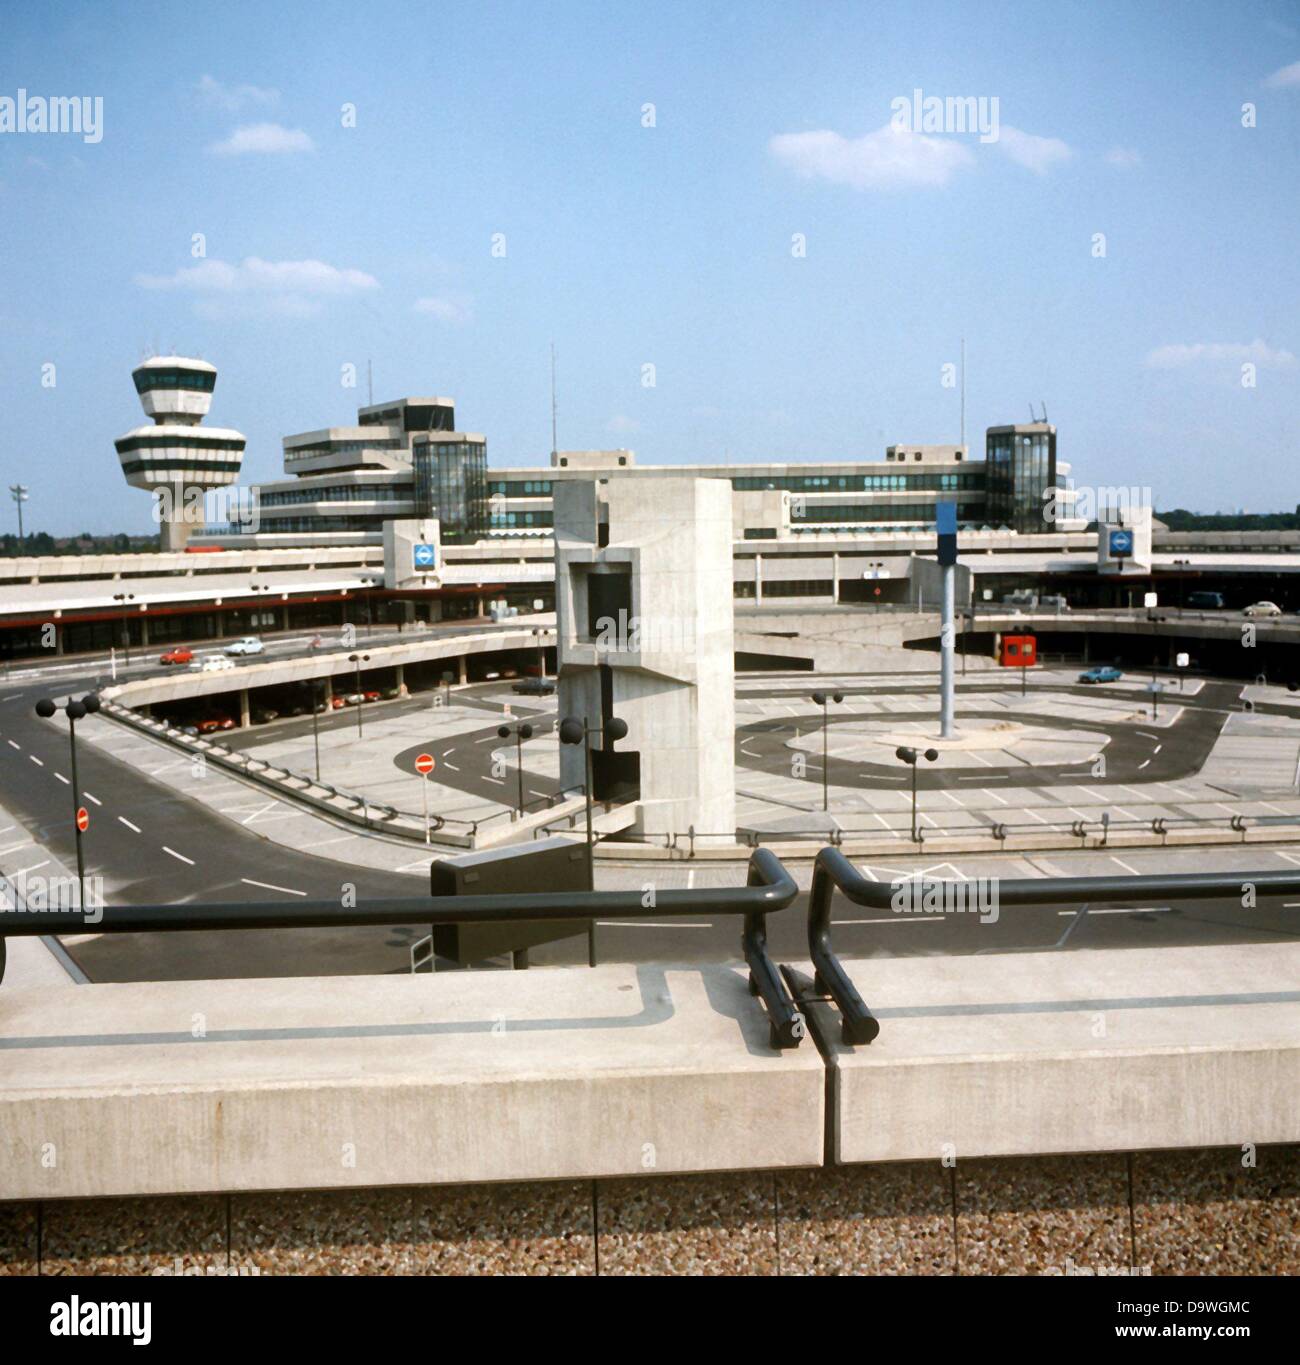 Avis sur l'aire de stationnement, les portes et de l'immeuble principal avec la tour de l'aéroport de Berlin-Tegel. Le nouvel aéroport de Berlin-Tegel a été mis en service le 1er novembre en 1974. Banque D'Images